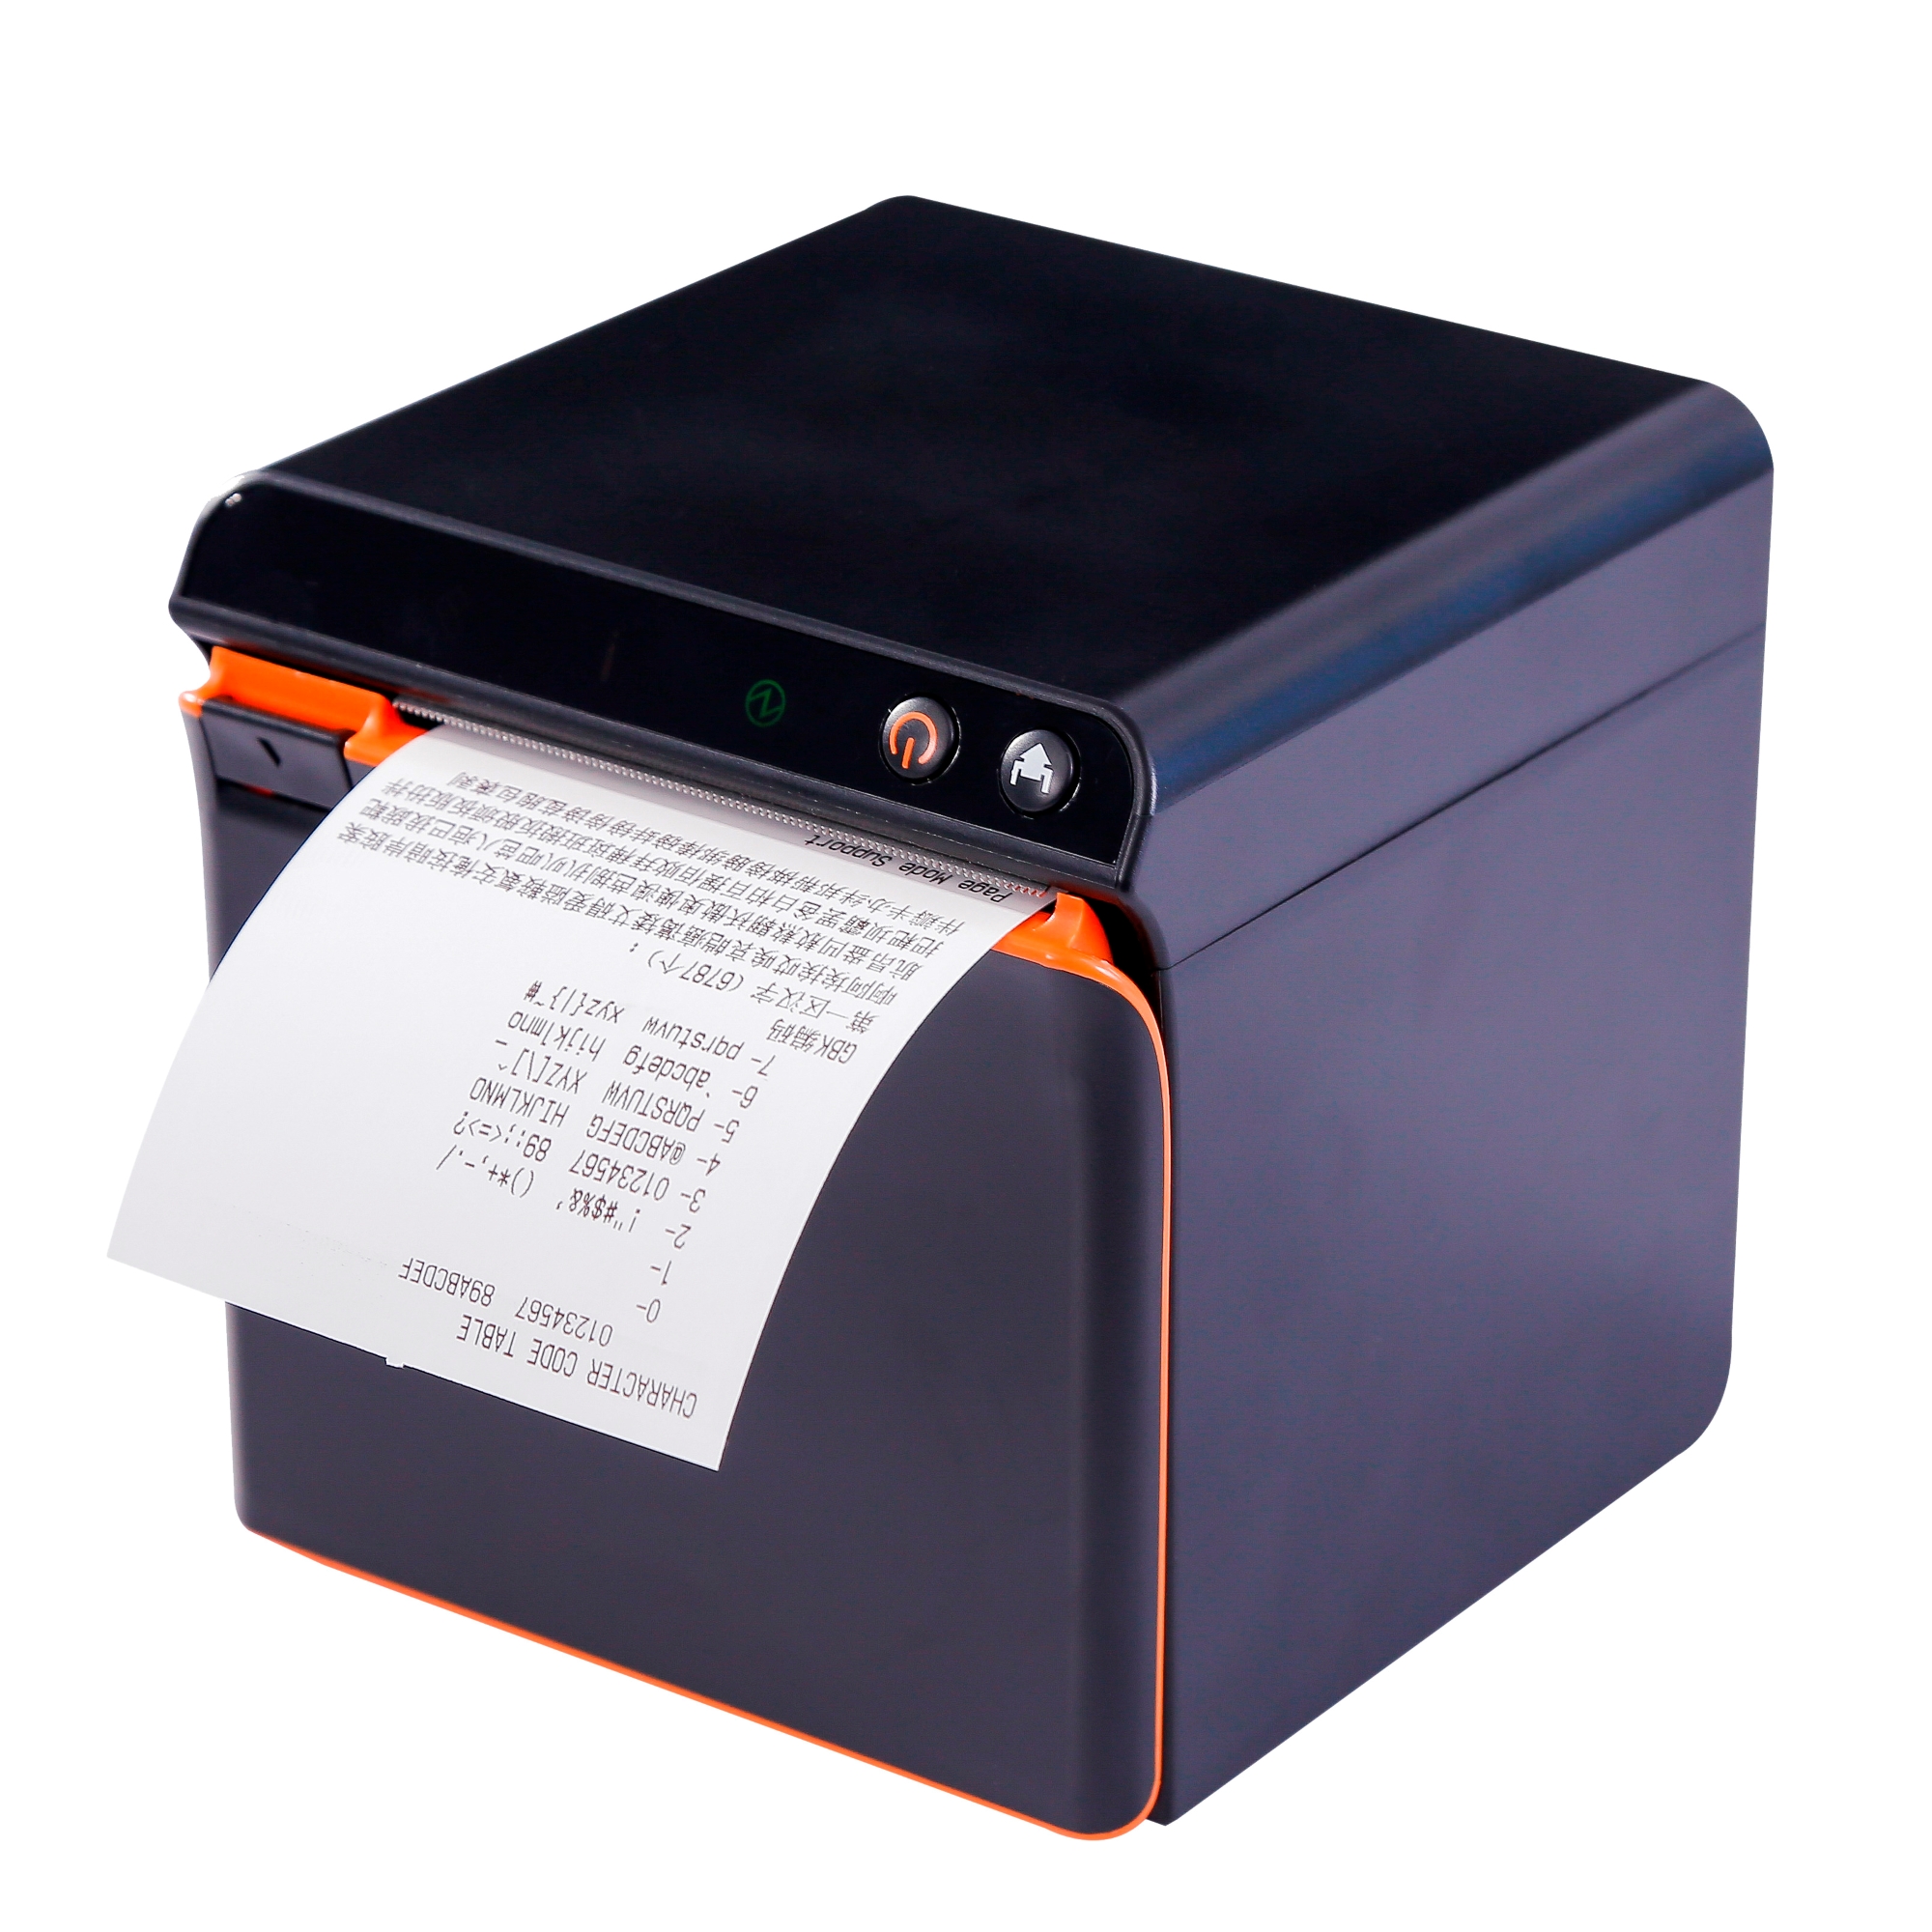  Papel de impresora térmica (4 rollos por paquete) : Productos  de Oficina